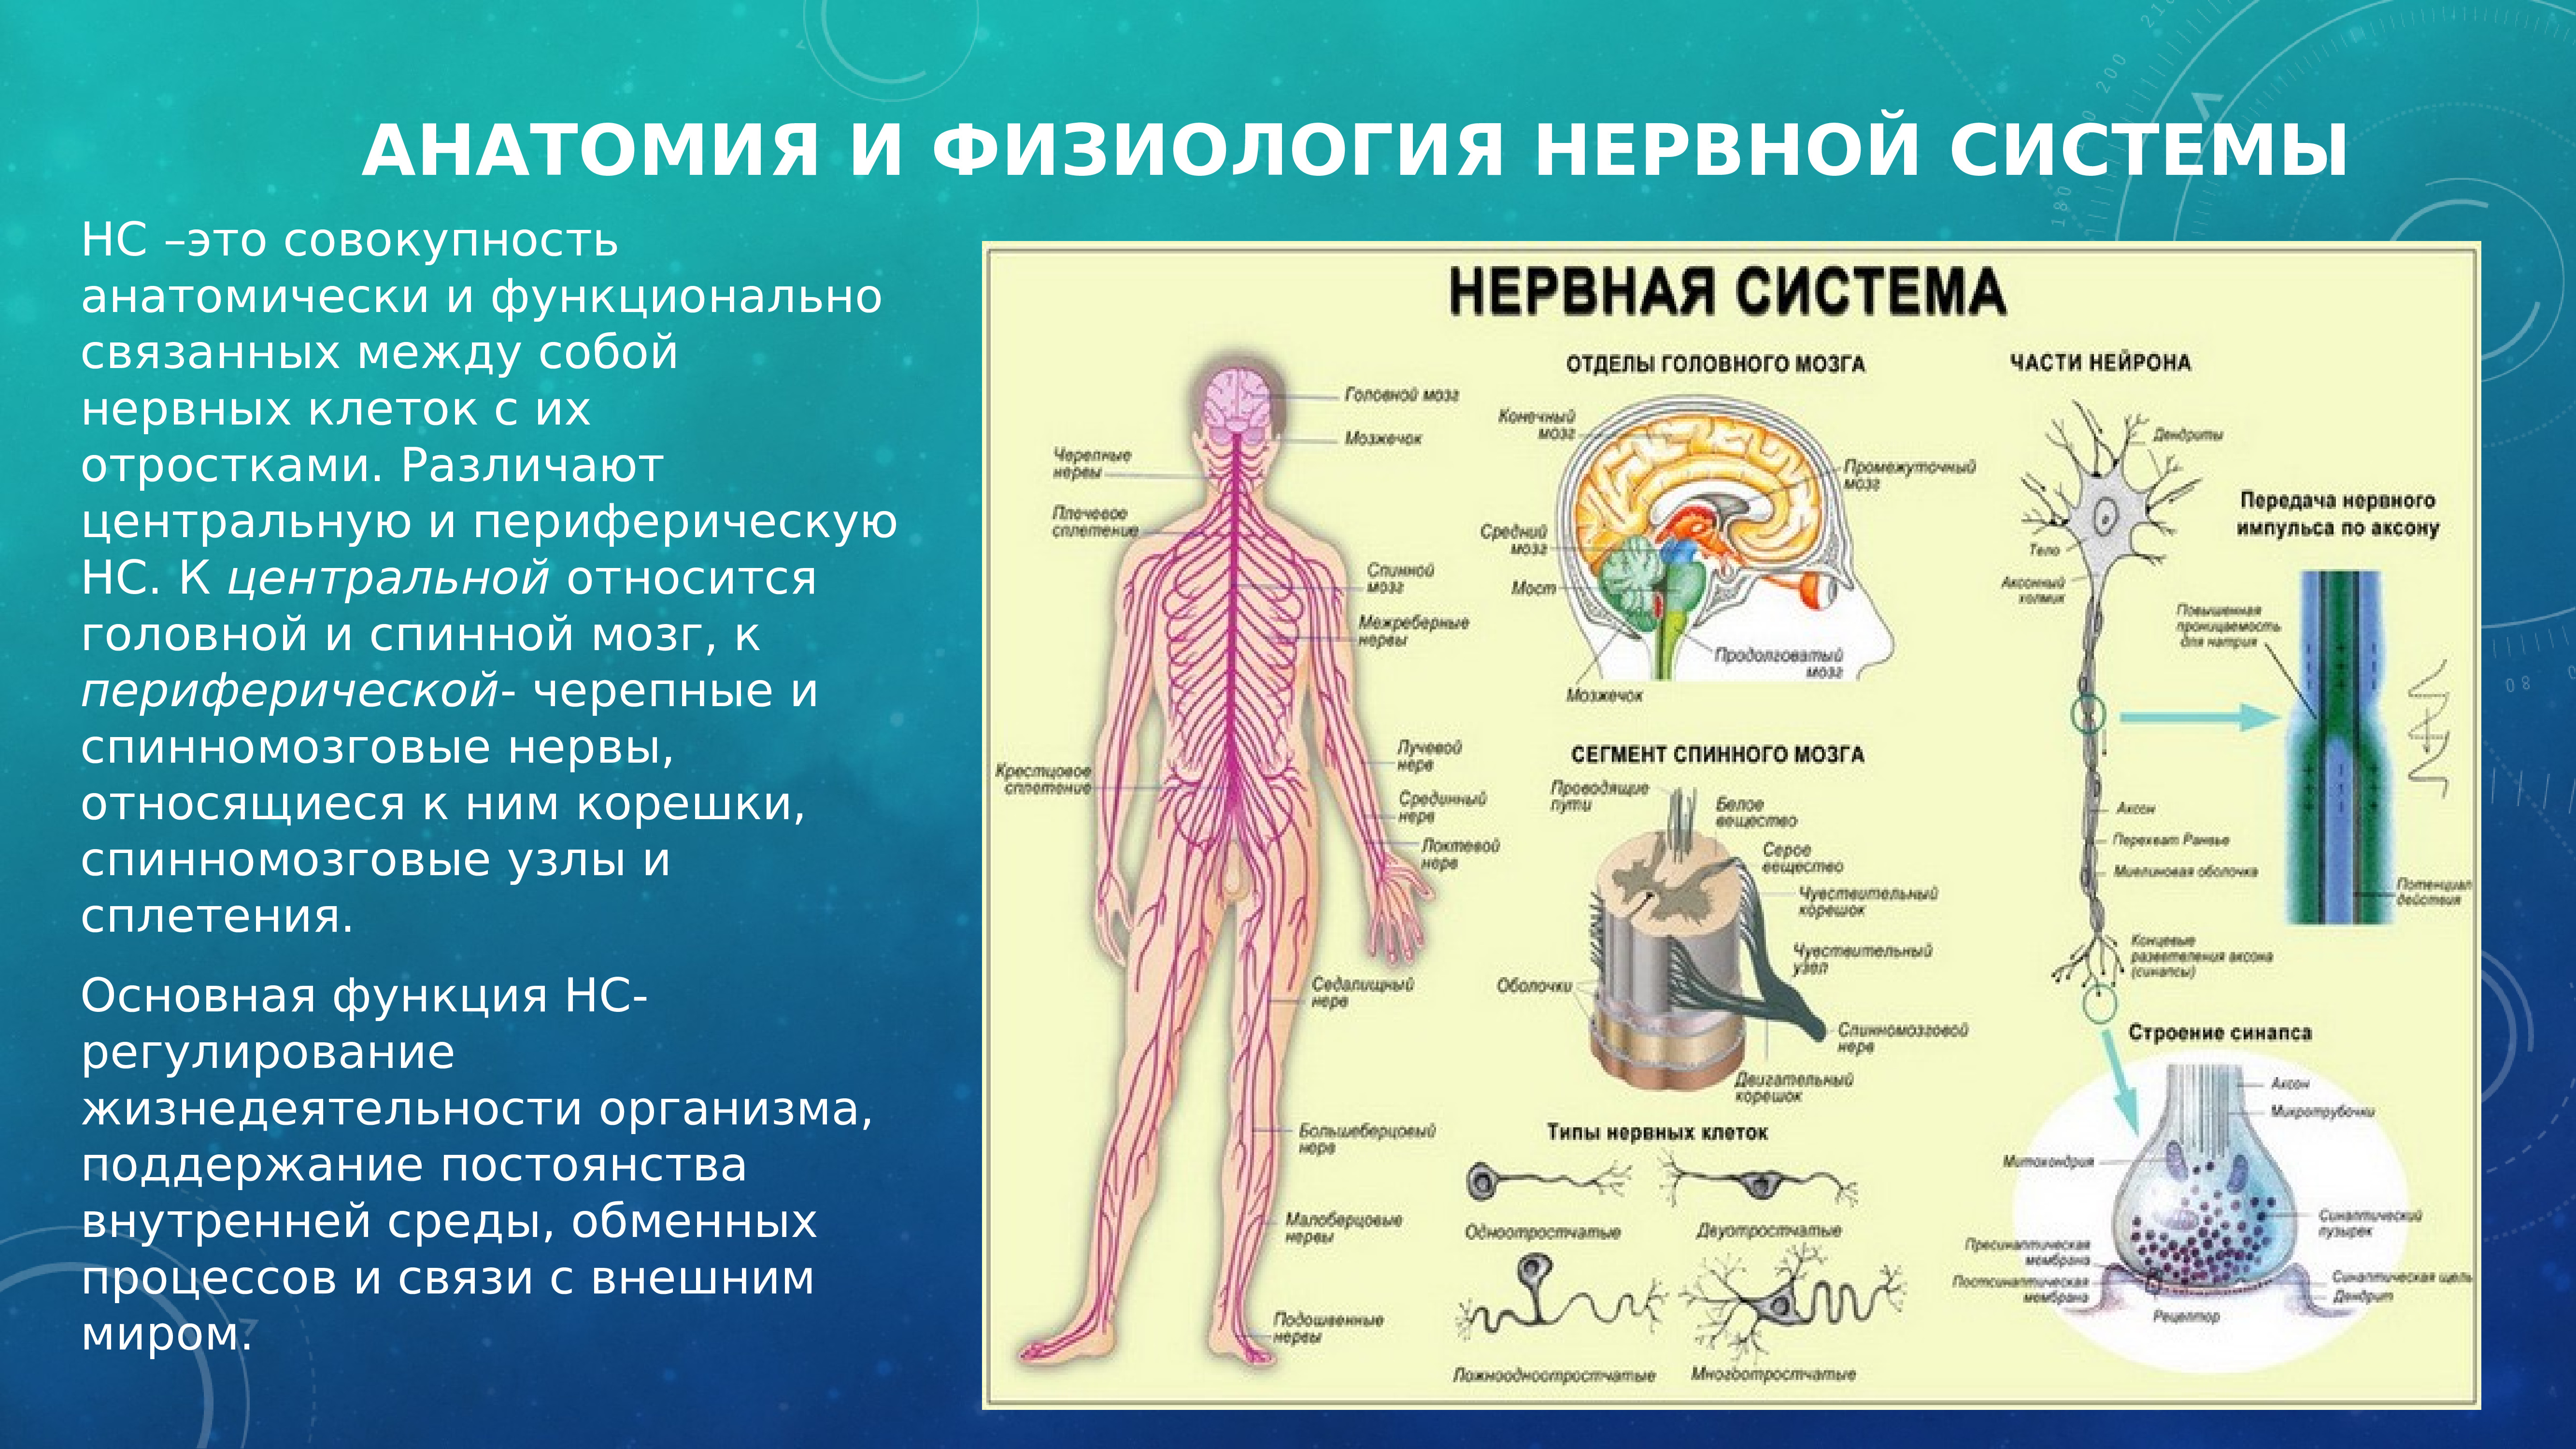 Название органа периферической нервной системы человека. Анатомия и физиология нервной системы. Разделение нервной системы на центральную и периферическую. Нервная система человека делится на центральную и периферическую. ЦНС И ПНС анатомия и физиология человека.